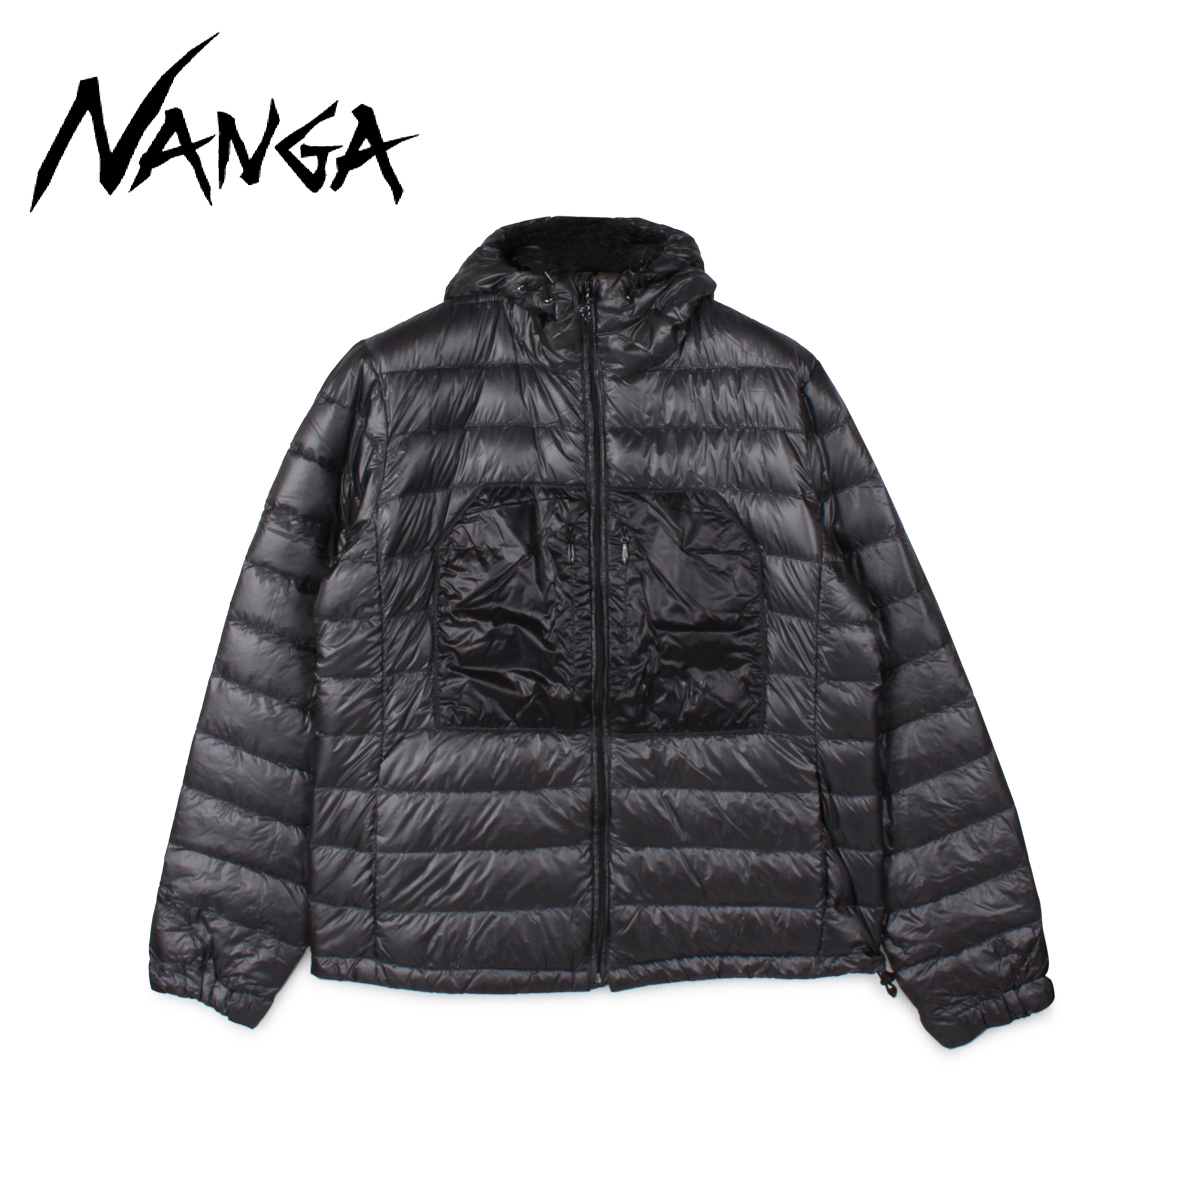 NANGA ナンガ ダウンジャケット ダウンパーカー アウター エアリアル メンズ 軽量 防寒 パッカブル アウトドア AERIAL DOWN  PARKA PACKABLE ブラック 黒 N1AR 66％以上節約